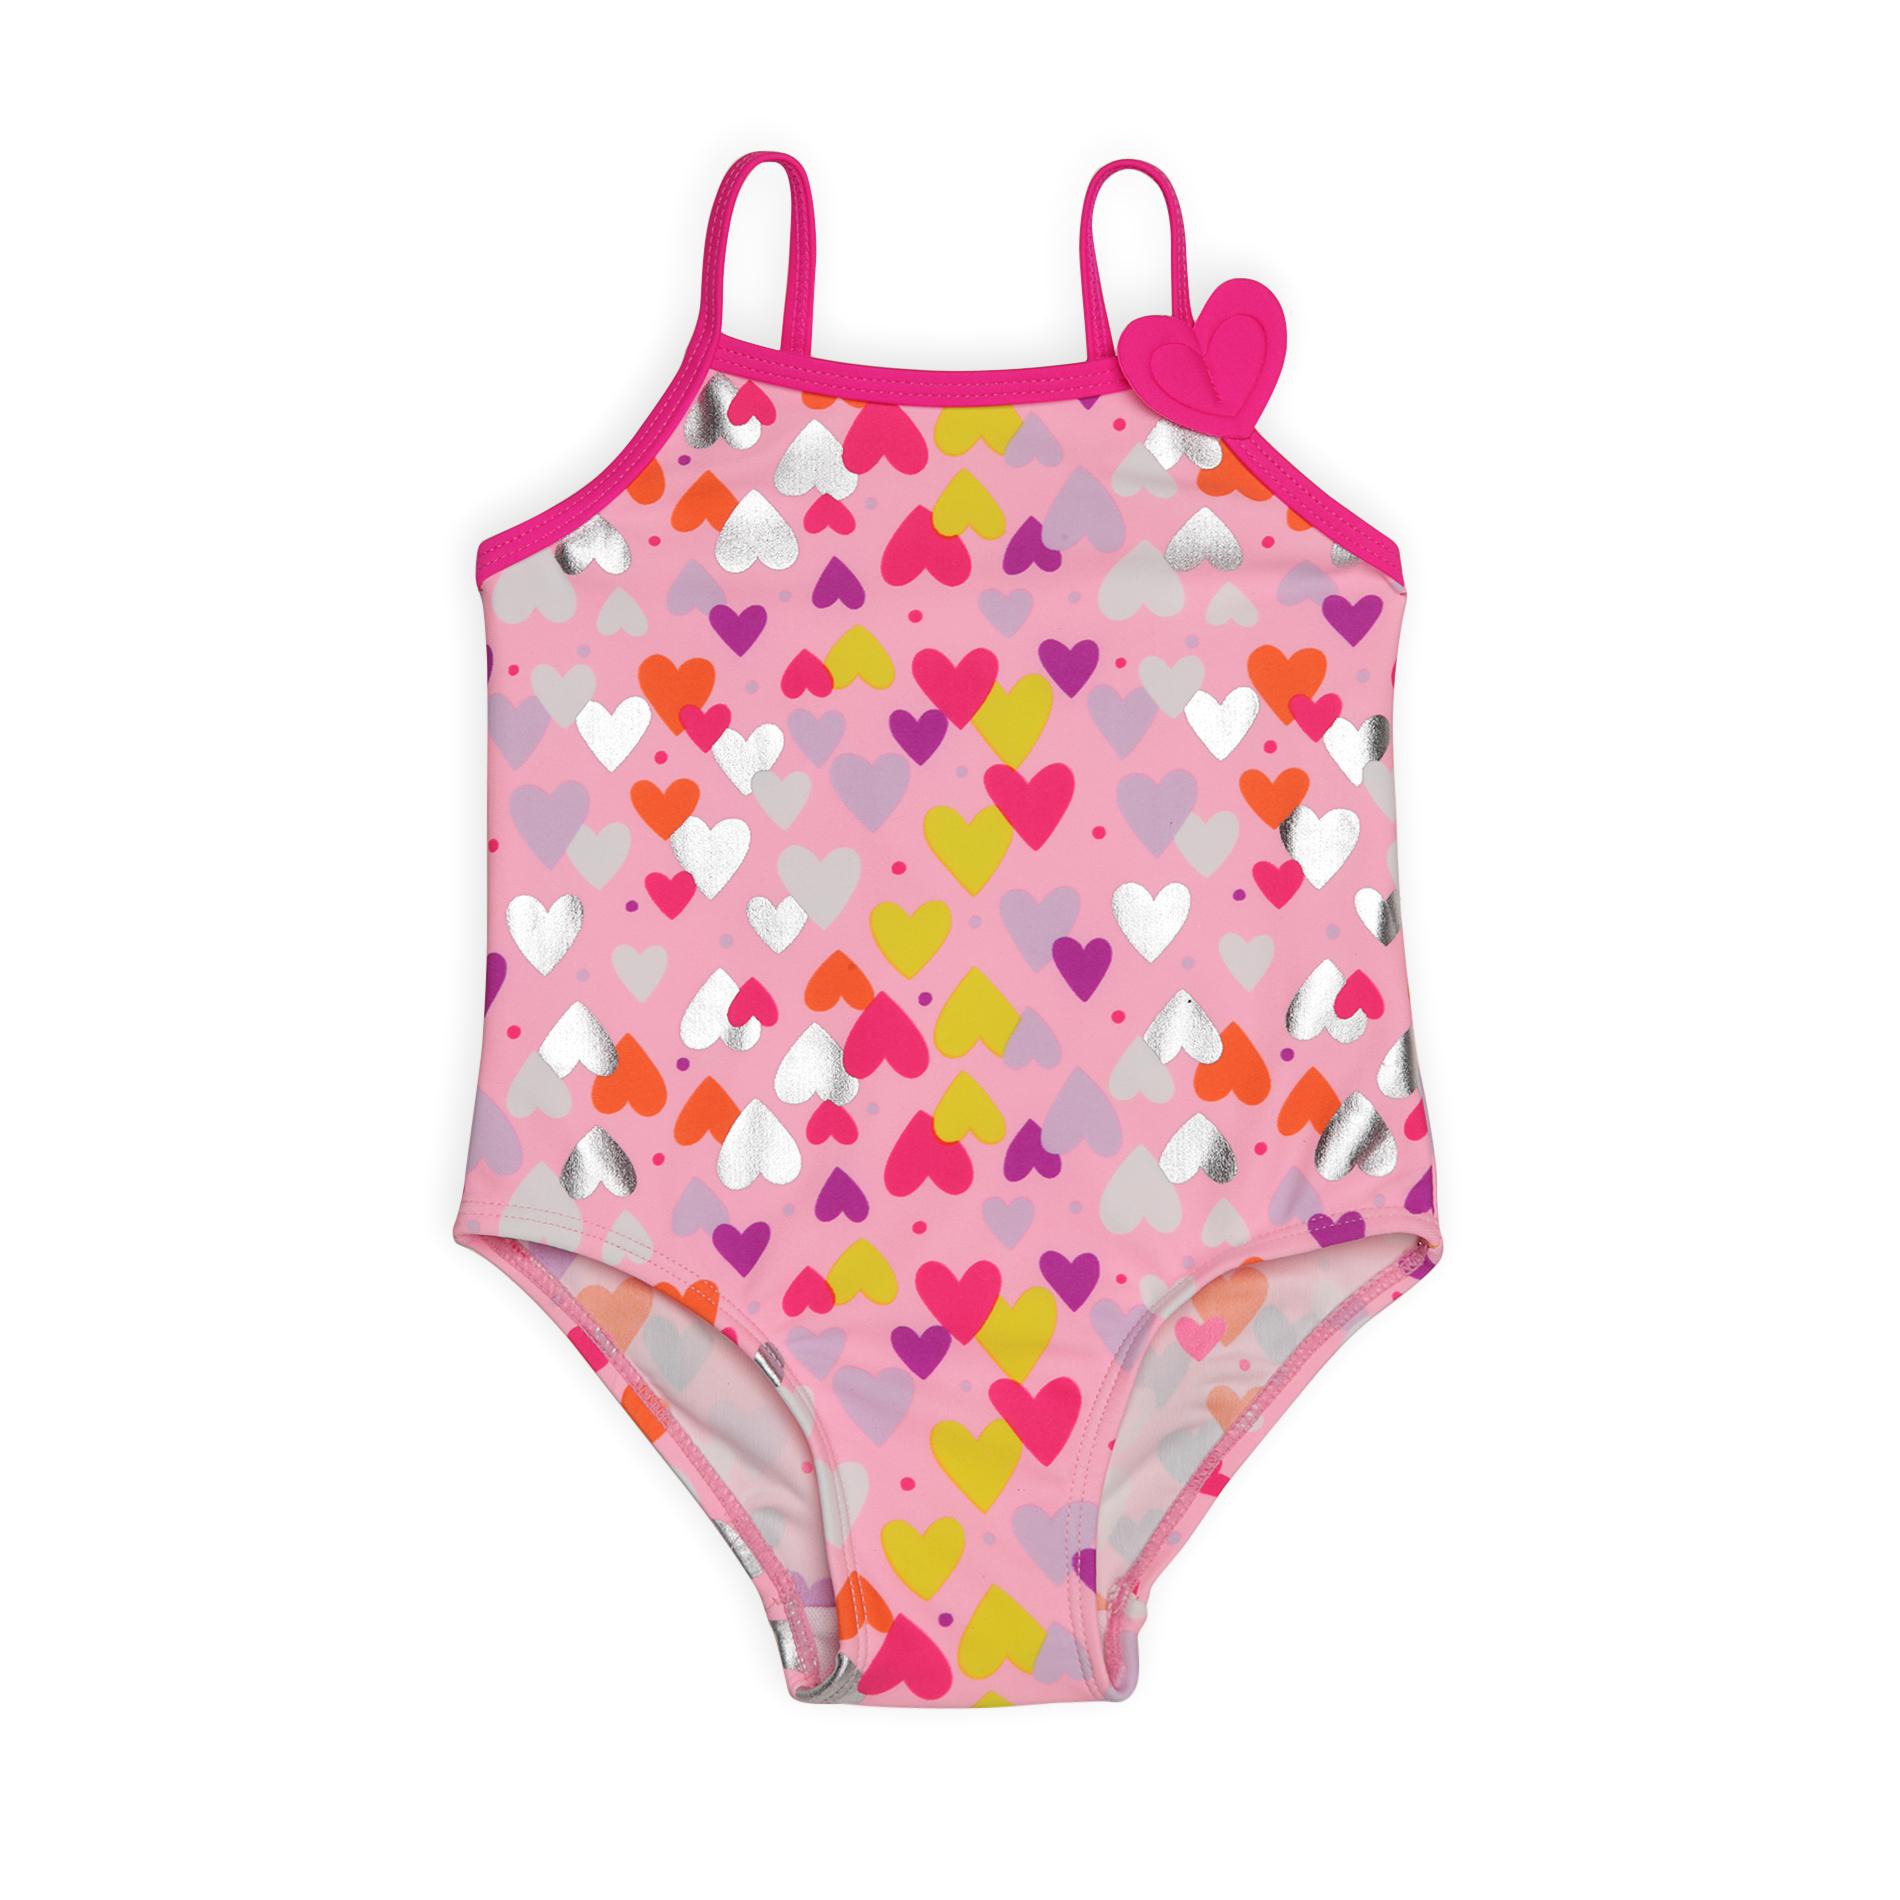 Joe Boxer Infant & Toddler Girl's Swimsuit - Heart Print